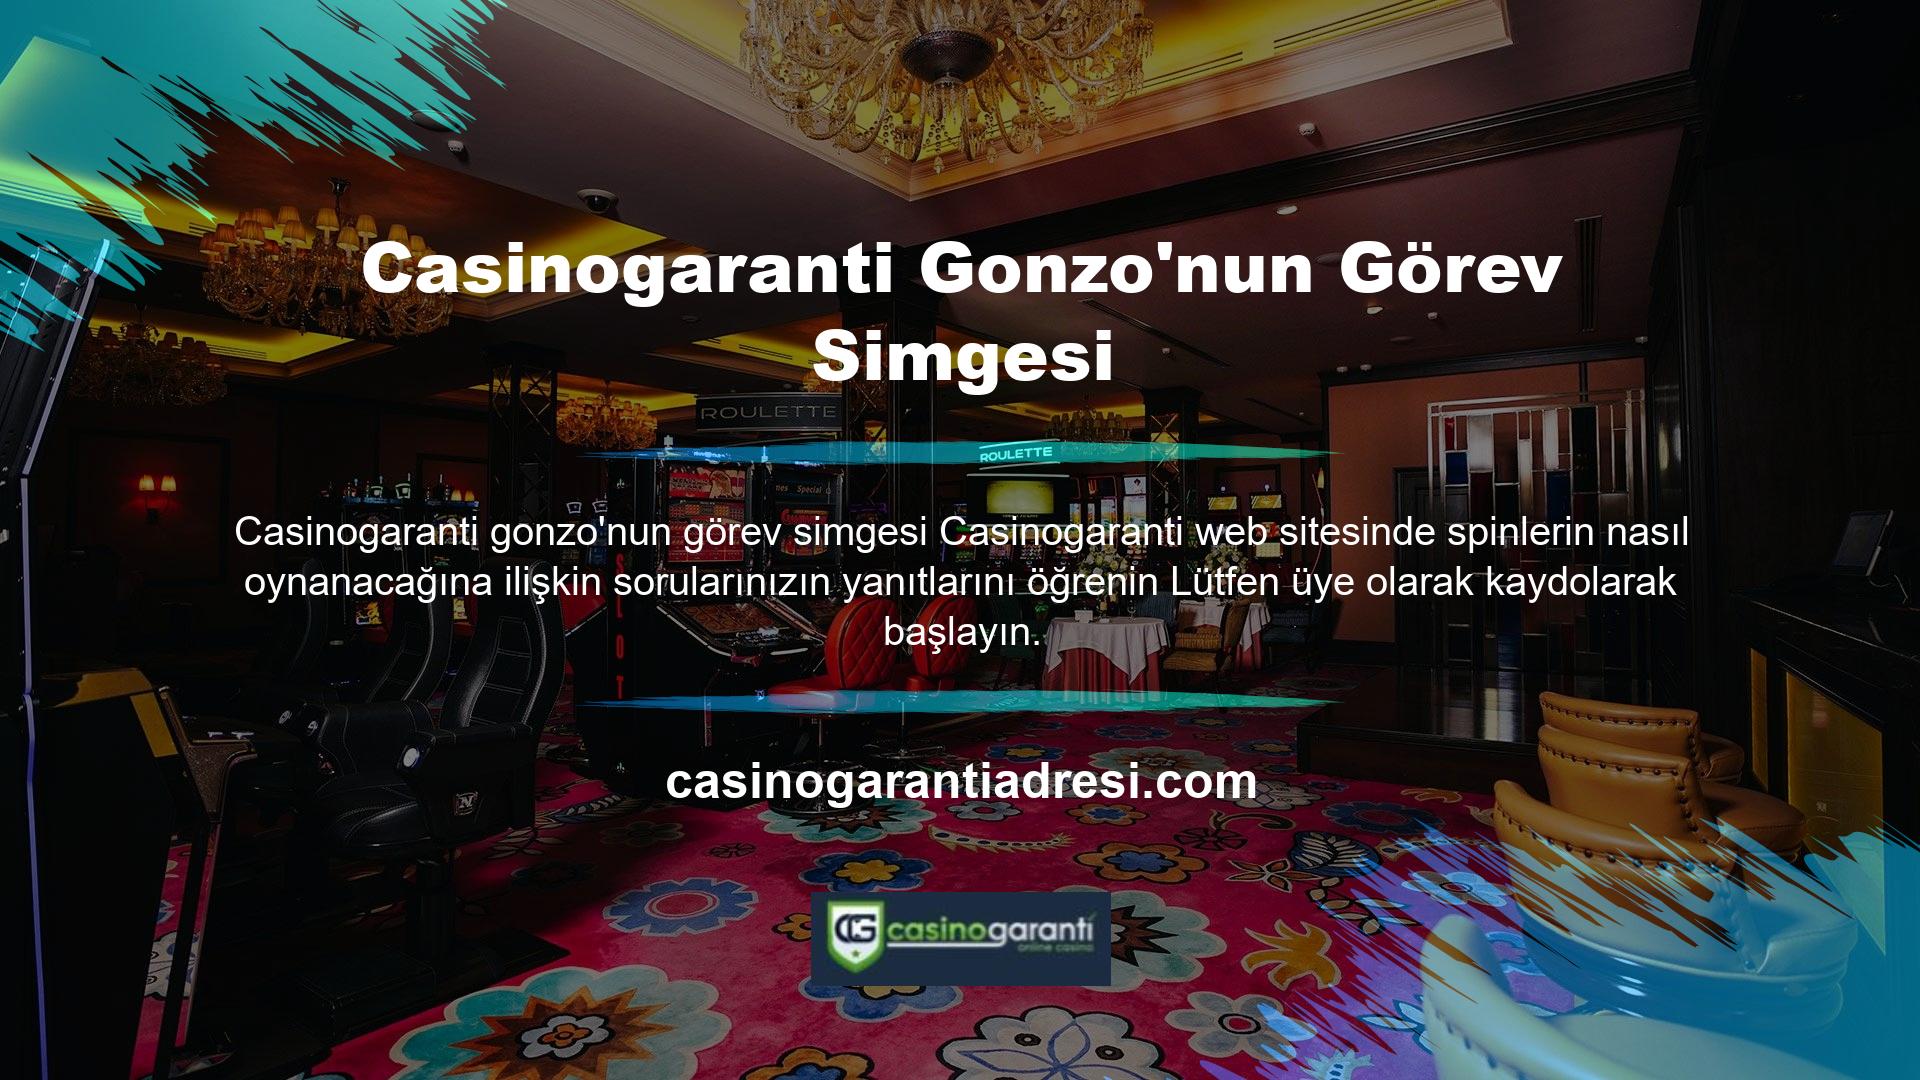 Türkiye, üyelerin hizmete güvenli bir şekilde giriş yapabilmeleri için sosyal medya hesaplarında paylaşılan yönlendirme bağlantılarını ve mevcut Casinogaranti üyelerinin giriş adreslerini Gonzo'nun misyon sembolü için kullanmak istiyor